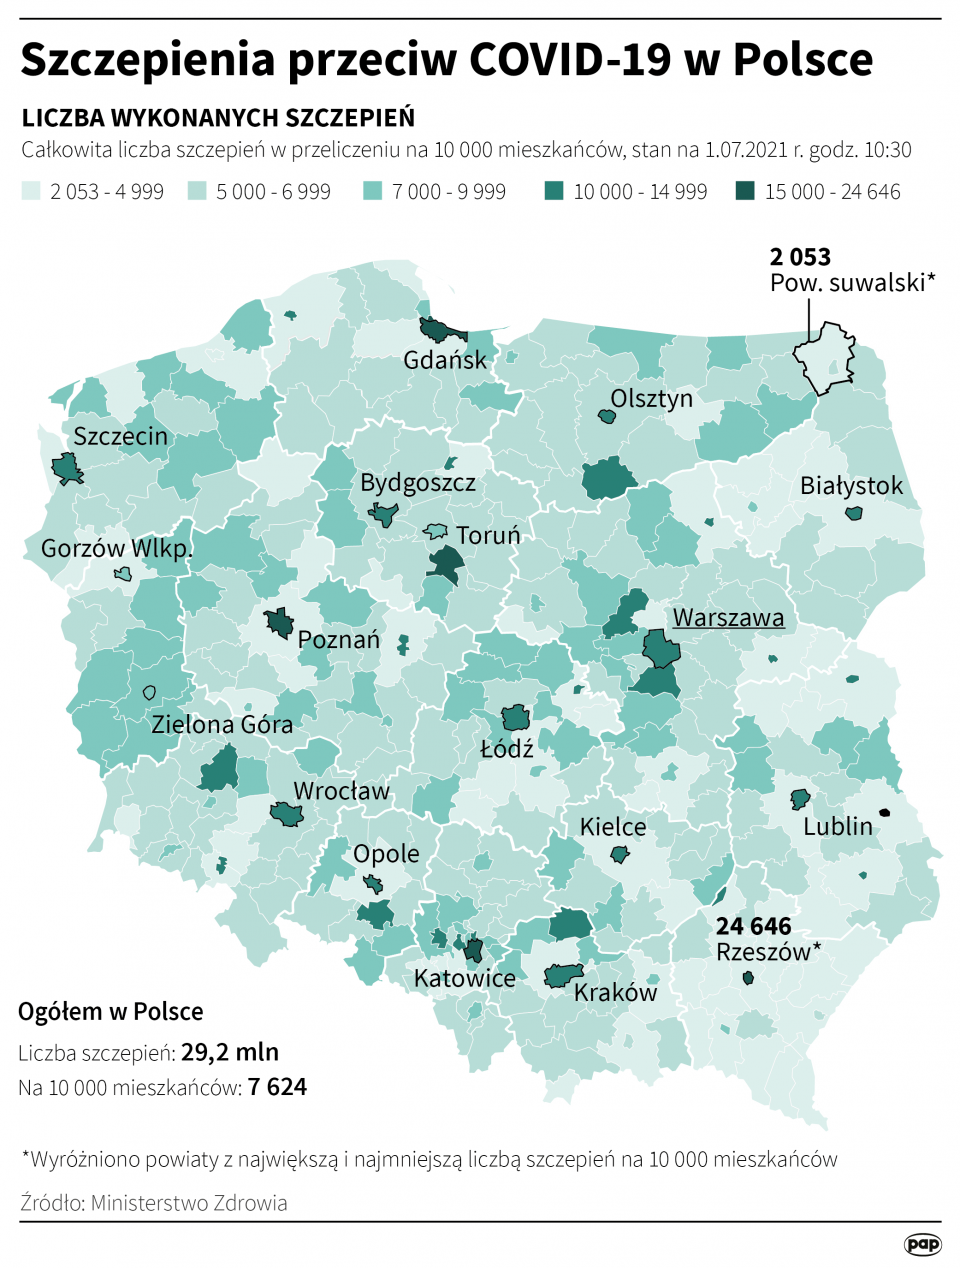 Szczepienia przeciw COVID-19 w Polsce [autor: Maciej Zieliński, źródło: PAP]